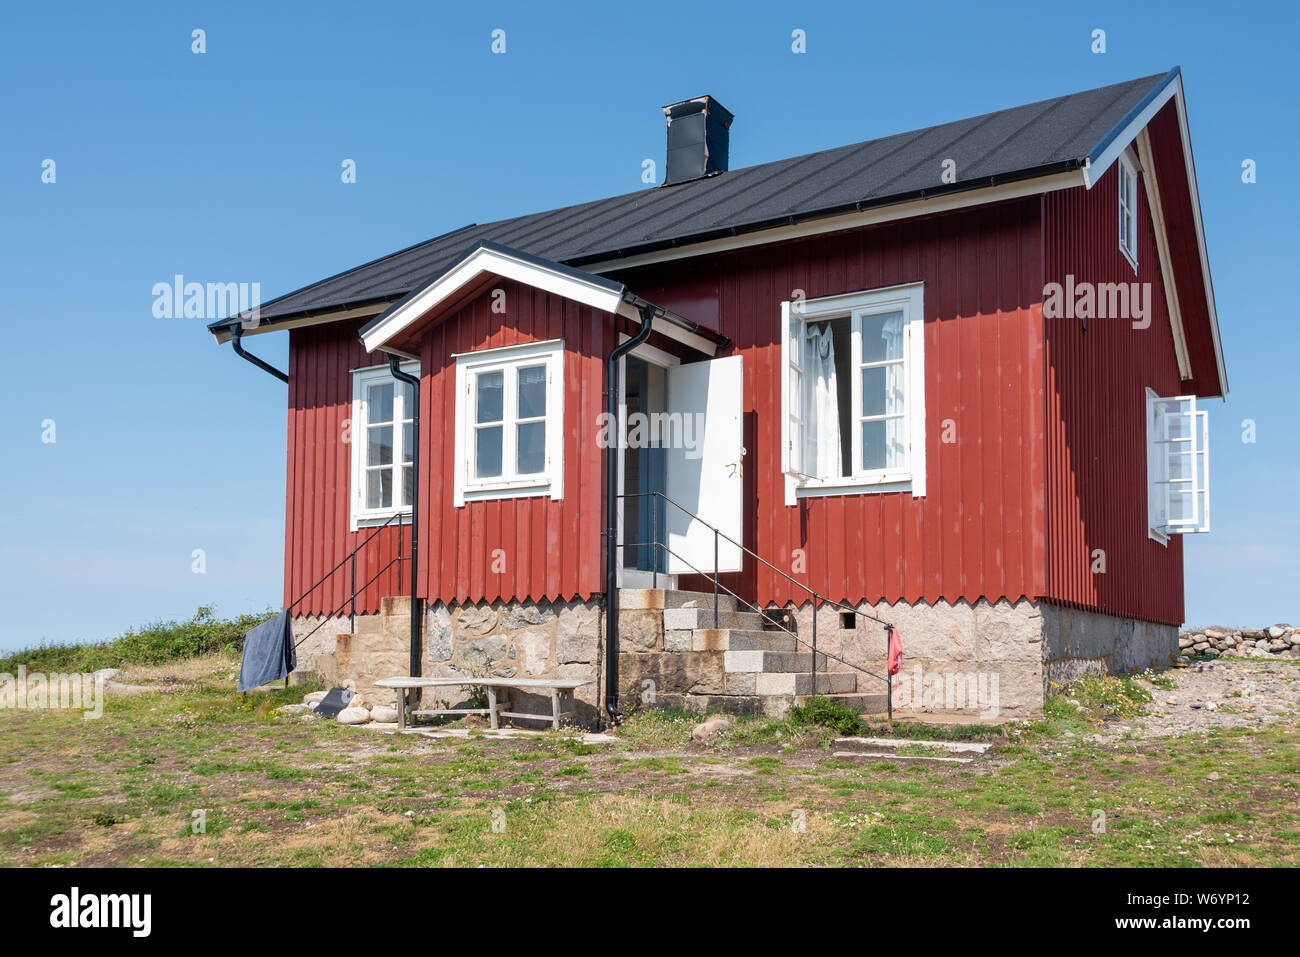 Ursholmen, Schweden - Juli 26, 2019: Blick auf die roten Häuser auf der Insel Ursholmen in der schwedischen Kosterhavet Nationalpark im Westen von Schweden. Stockfoto